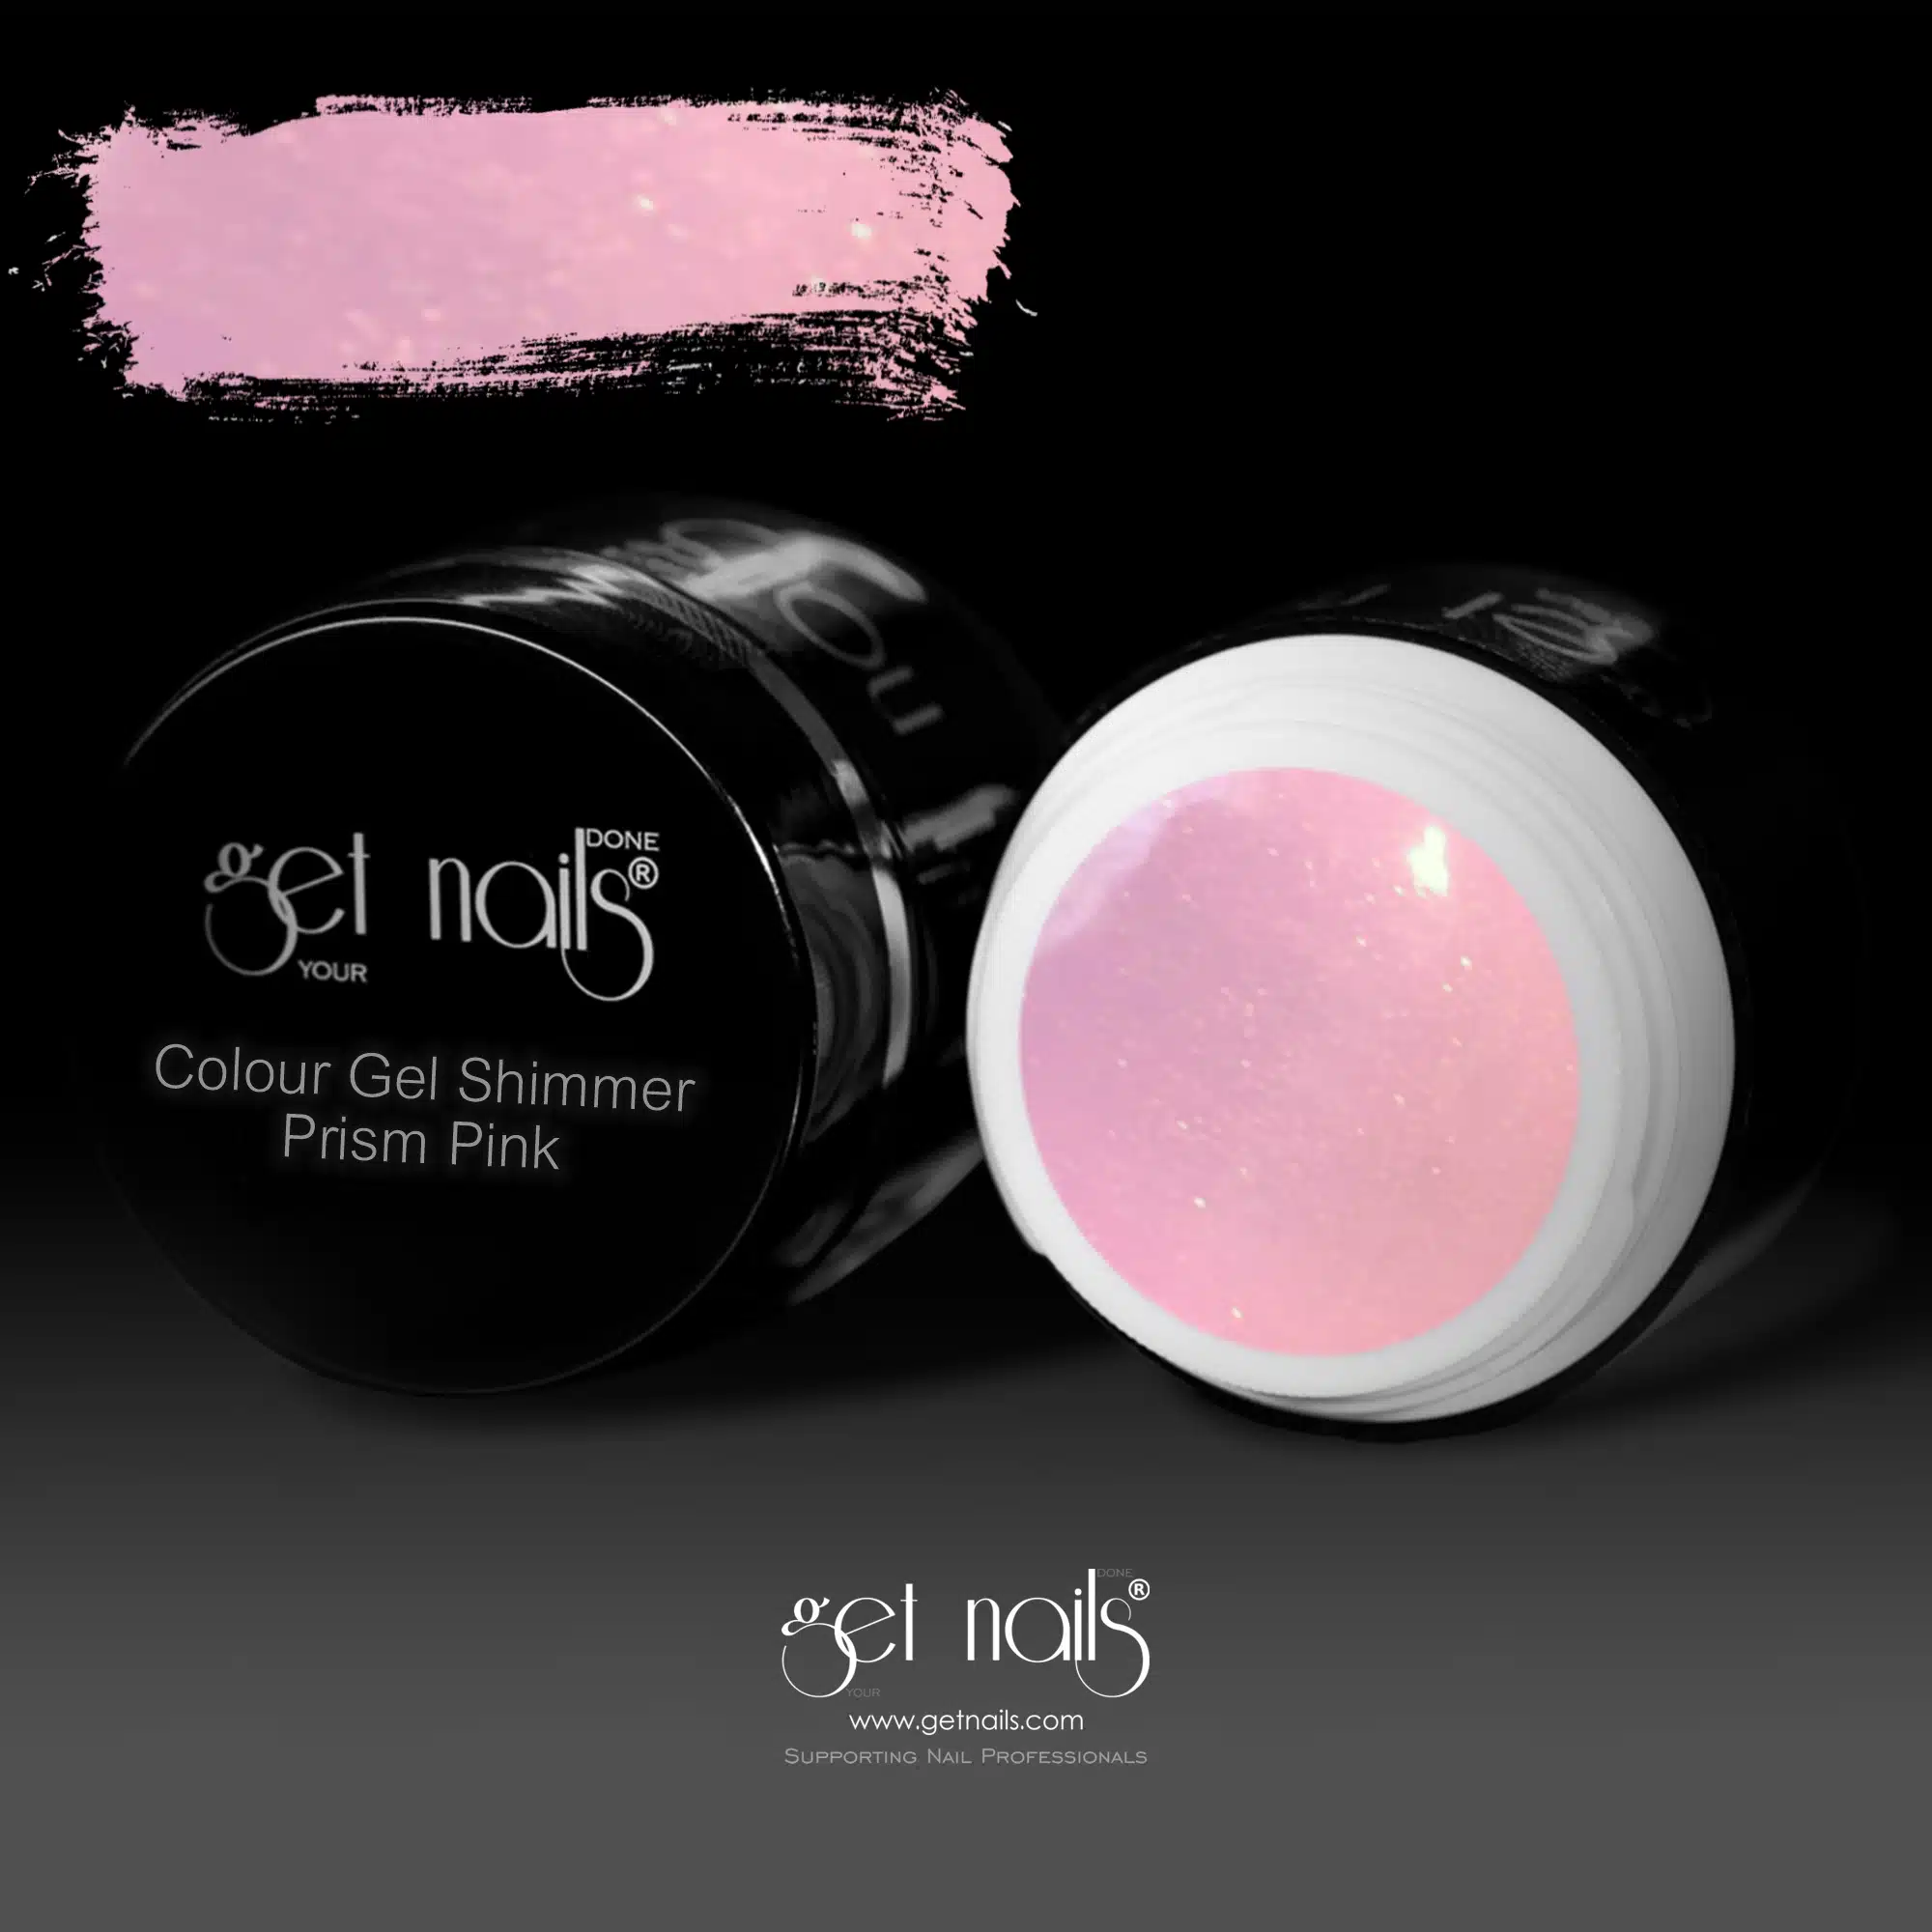 Get Nails Austria - Gel colorato Shimmer Prism Pink 5g